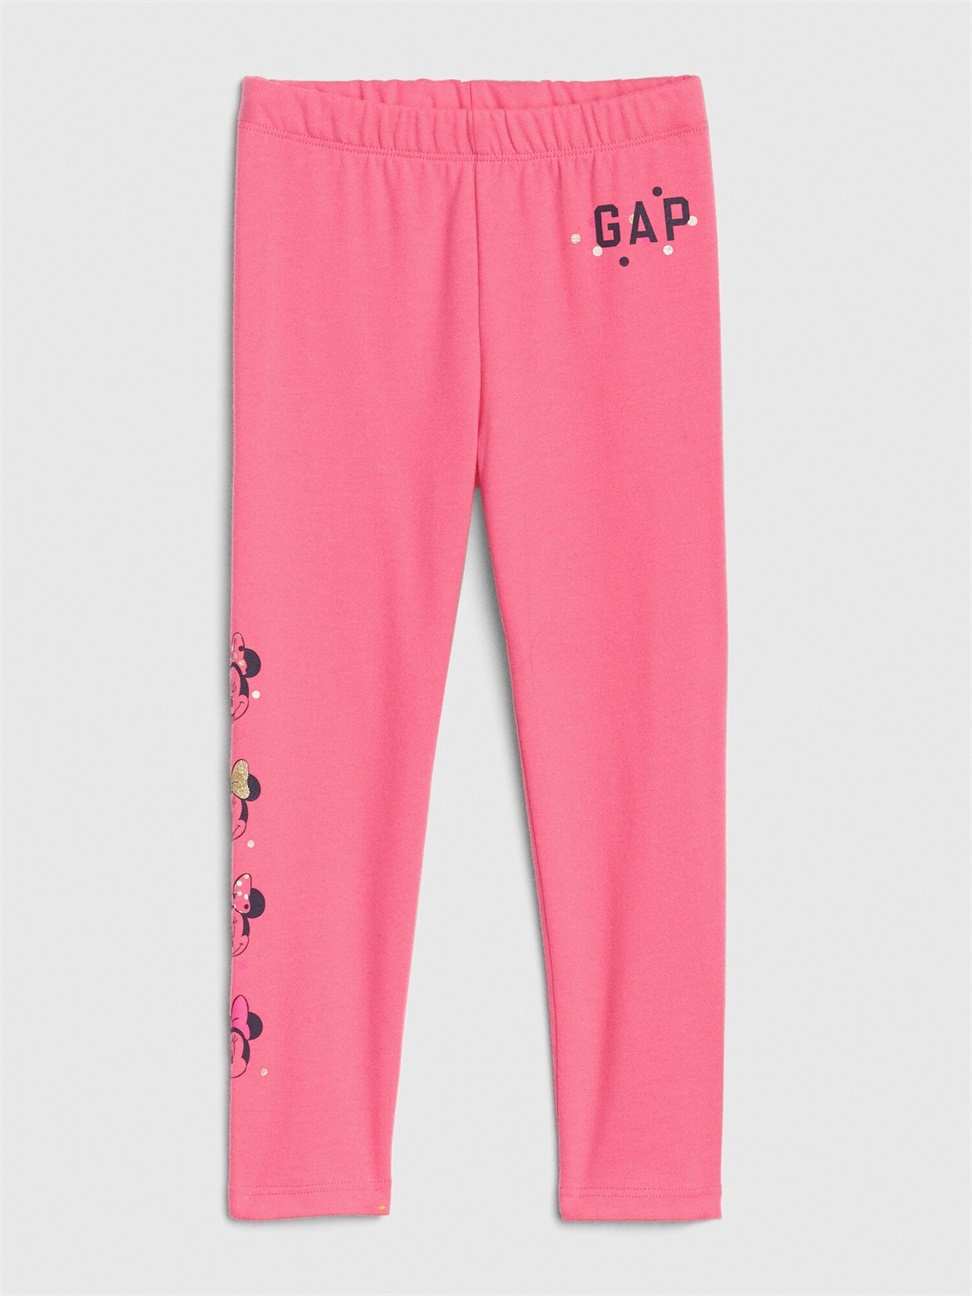 女幼童裝|Gap x Disney迪士尼聯名 米妮Logo鬆緊內搭褲-淺色粉